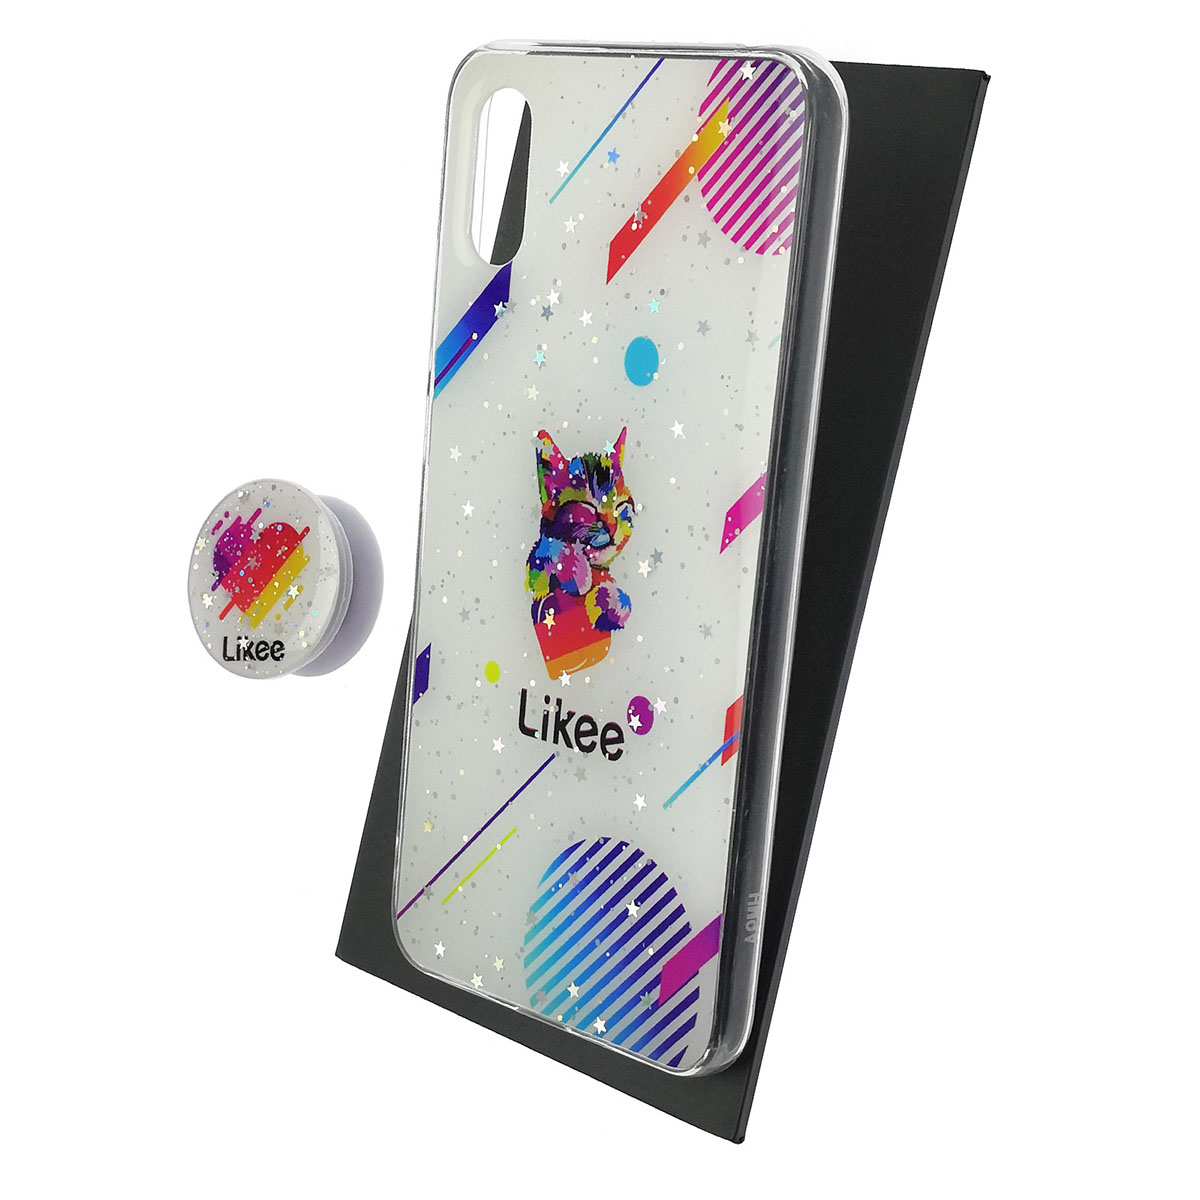 Чехол накладка для XIAOMI Redmi 9A, силикон, фактурный глянец, с поп сокетом, рисунок Likee